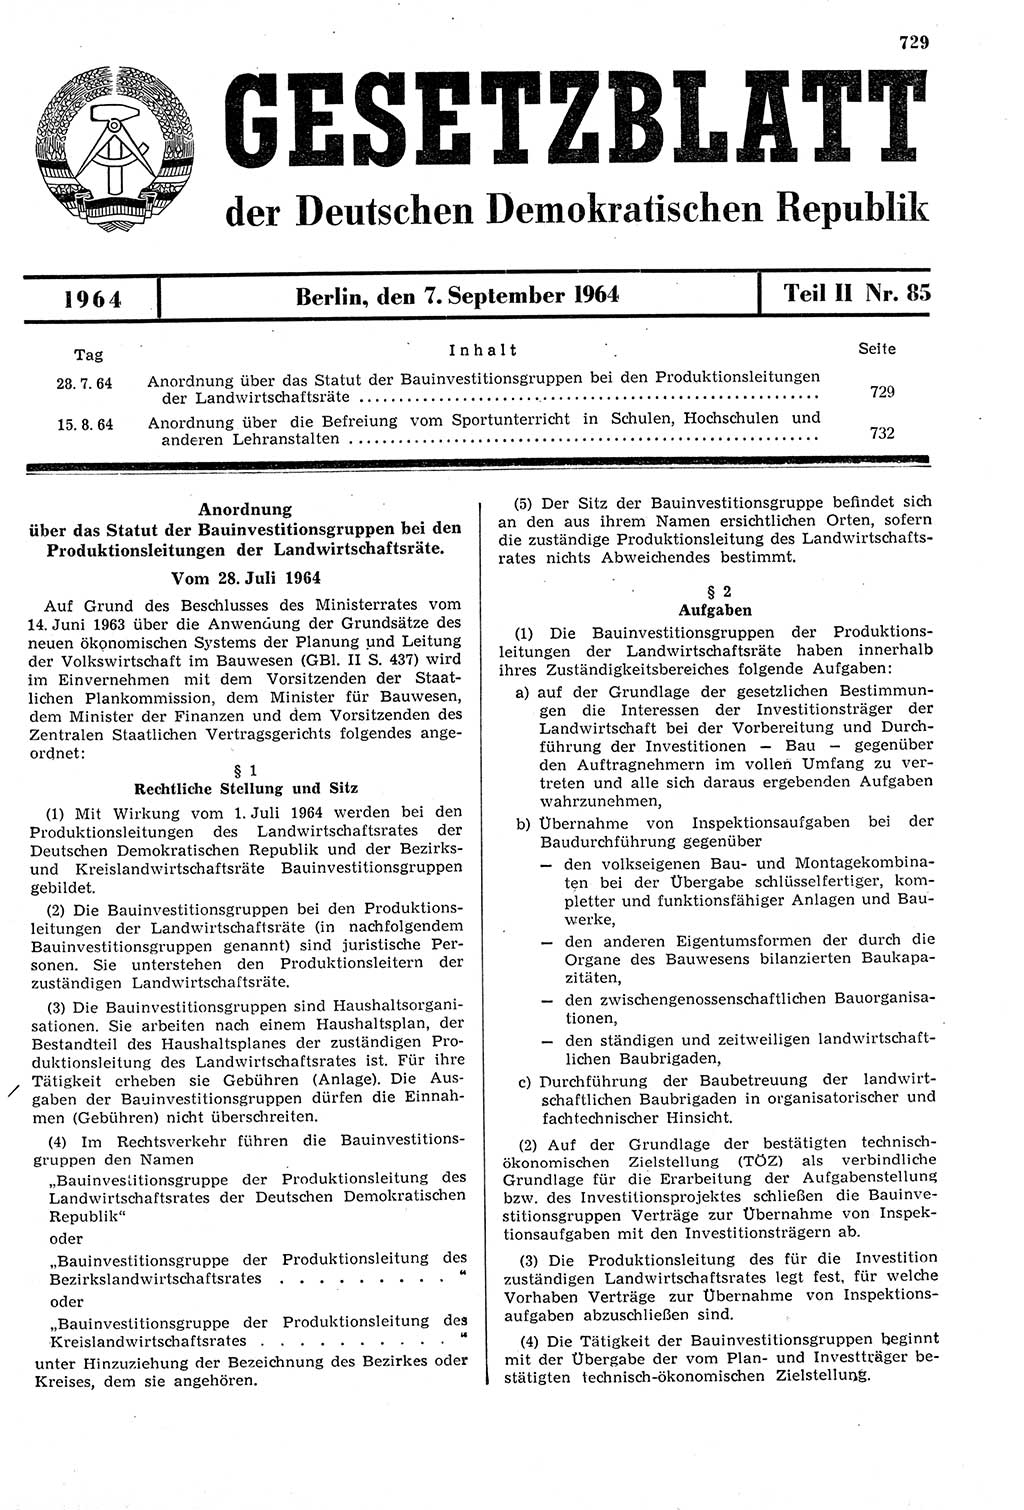 Gesetzblatt (GBl.) der Deutschen Demokratischen Republik (DDR) Teil ⅠⅠ 1964, Seite 729 (GBl. DDR ⅠⅠ 1964, S. 729)